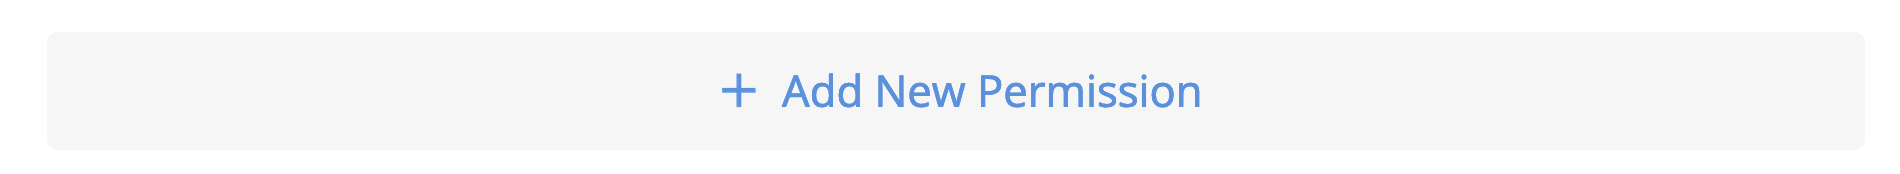 To add new permissions, click Add New Permission button